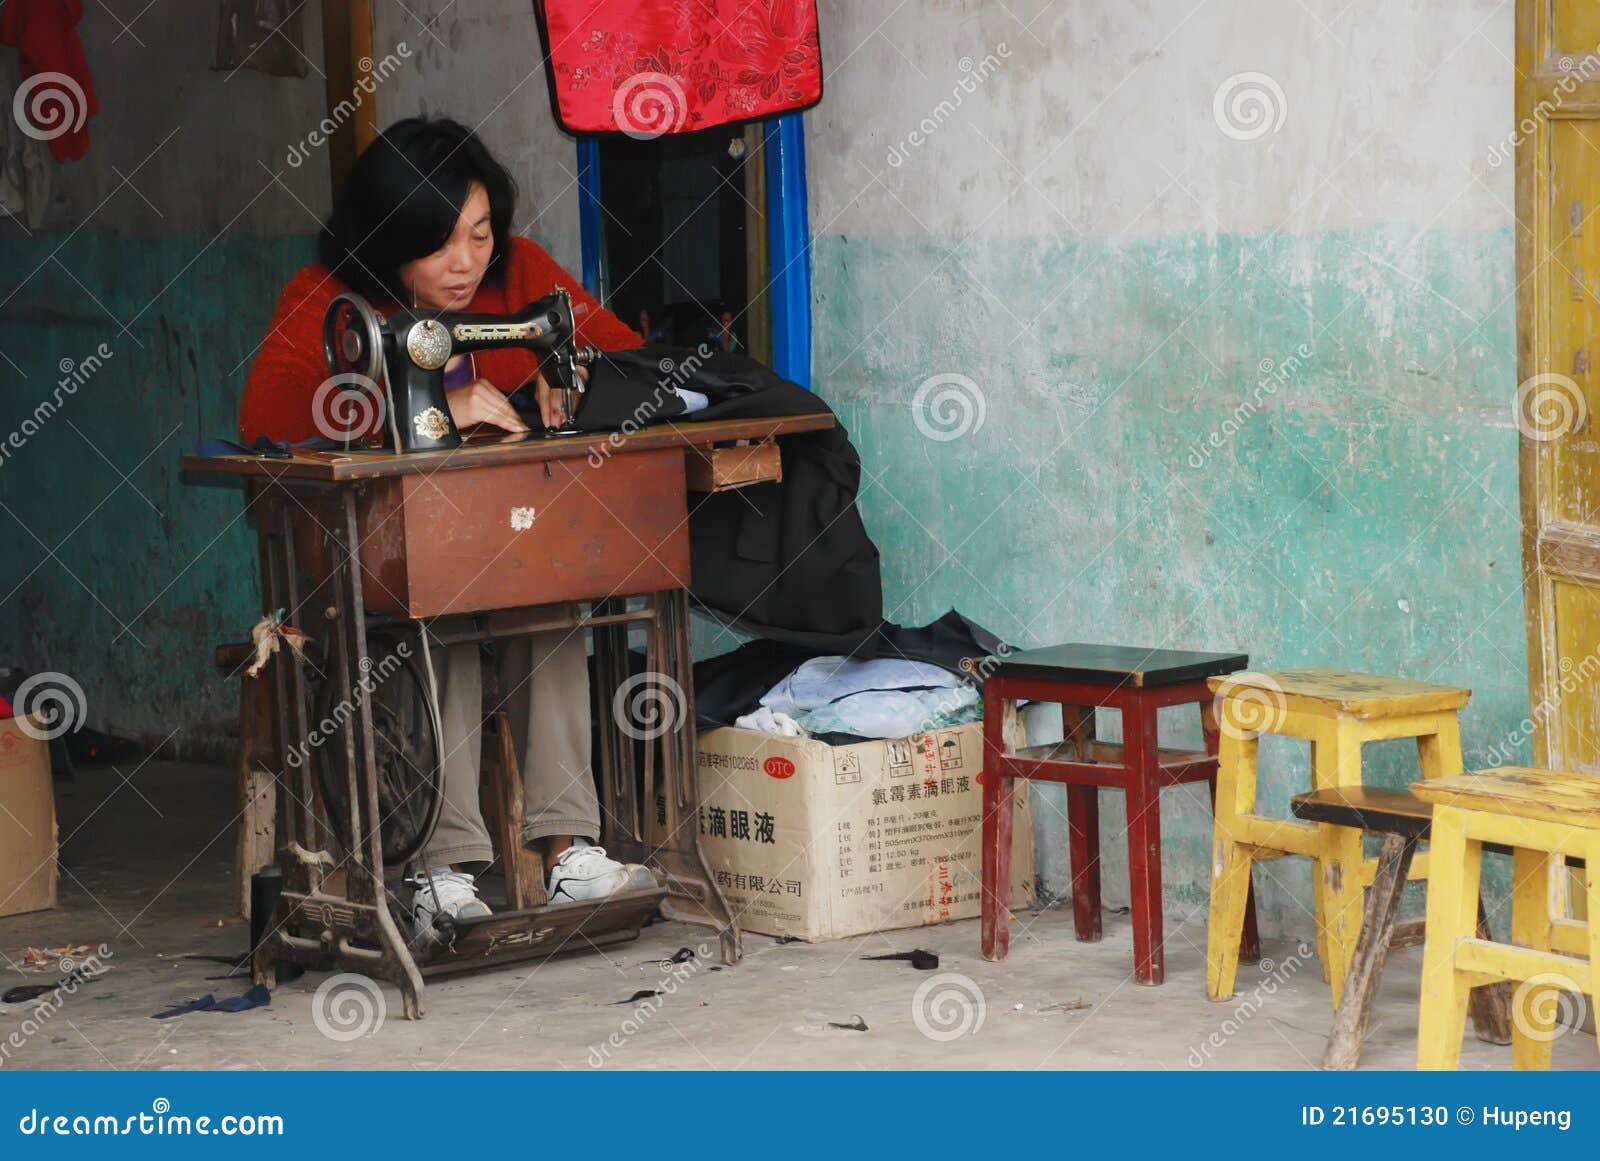 中国妇女在工作在服装界面. 中国妇女在工作在一个服装界面在四川，中国。